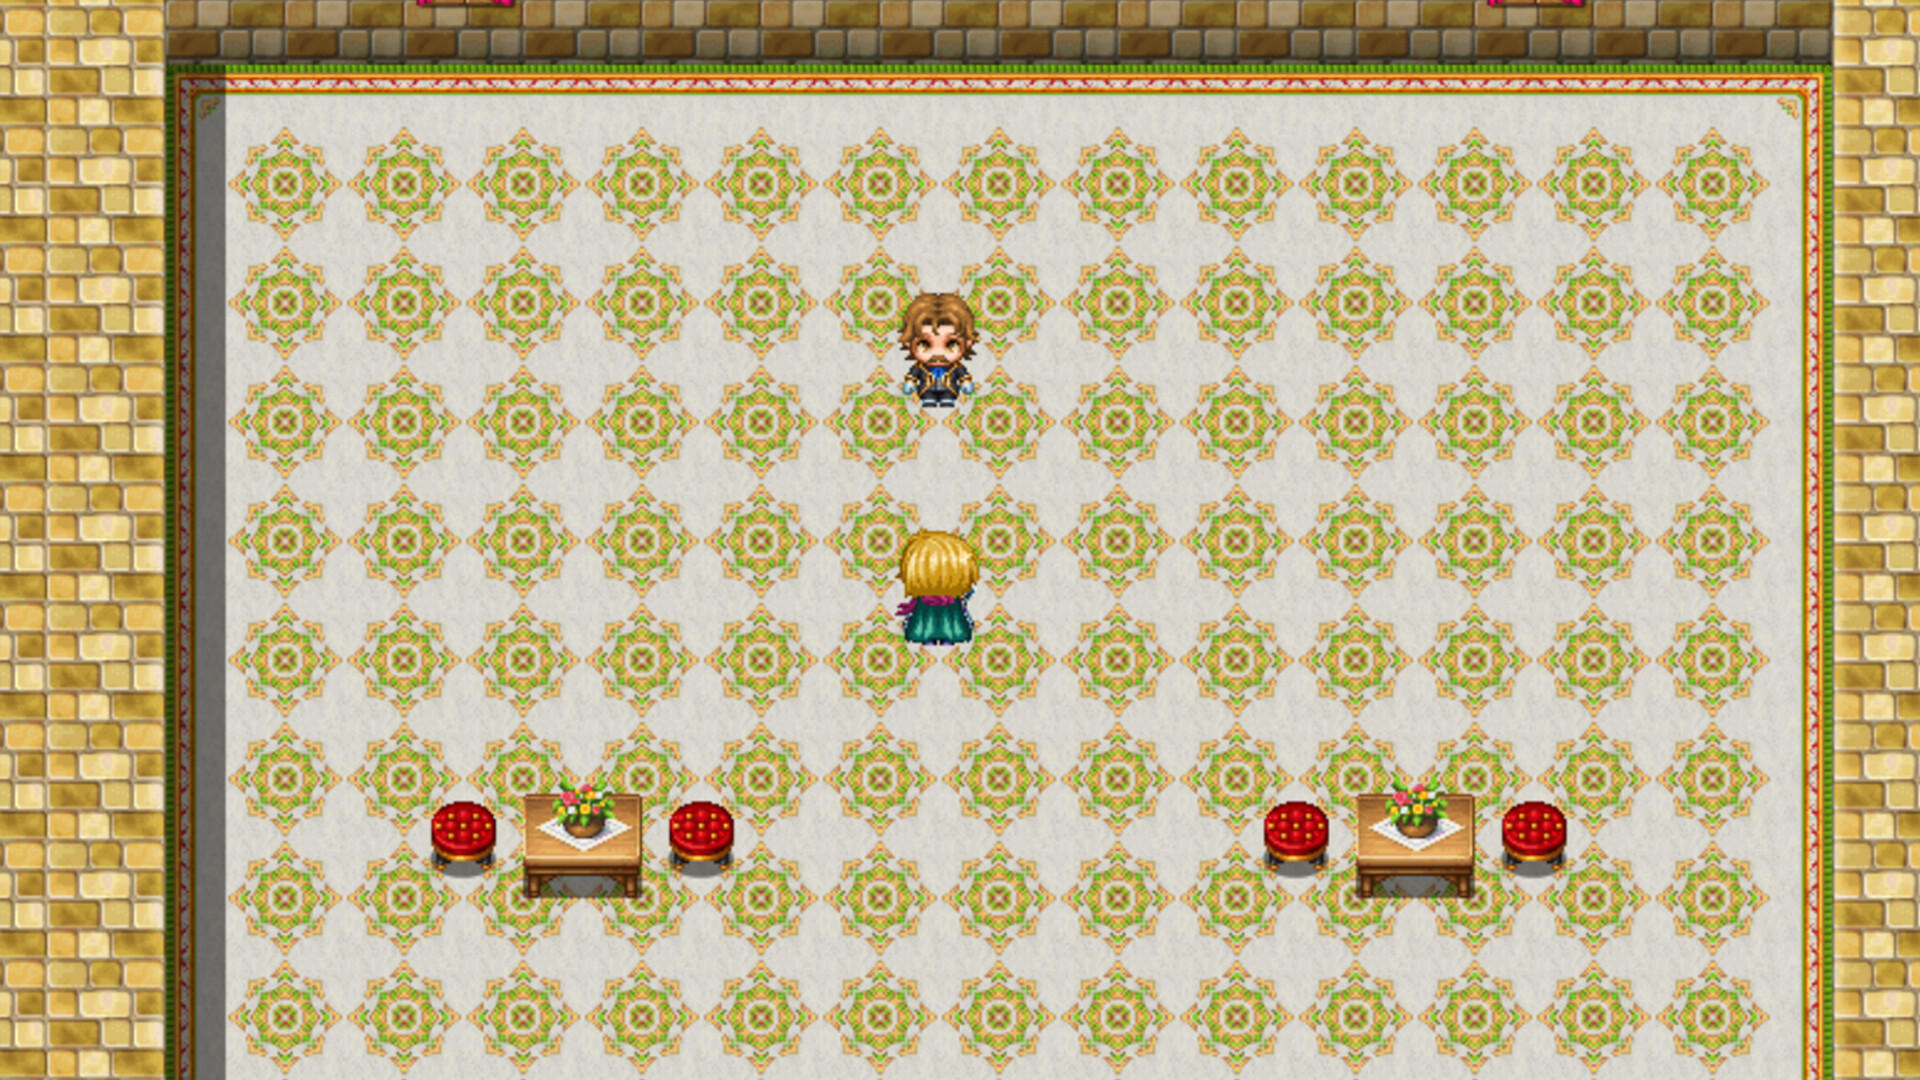 Rulers of Aden screenshot game